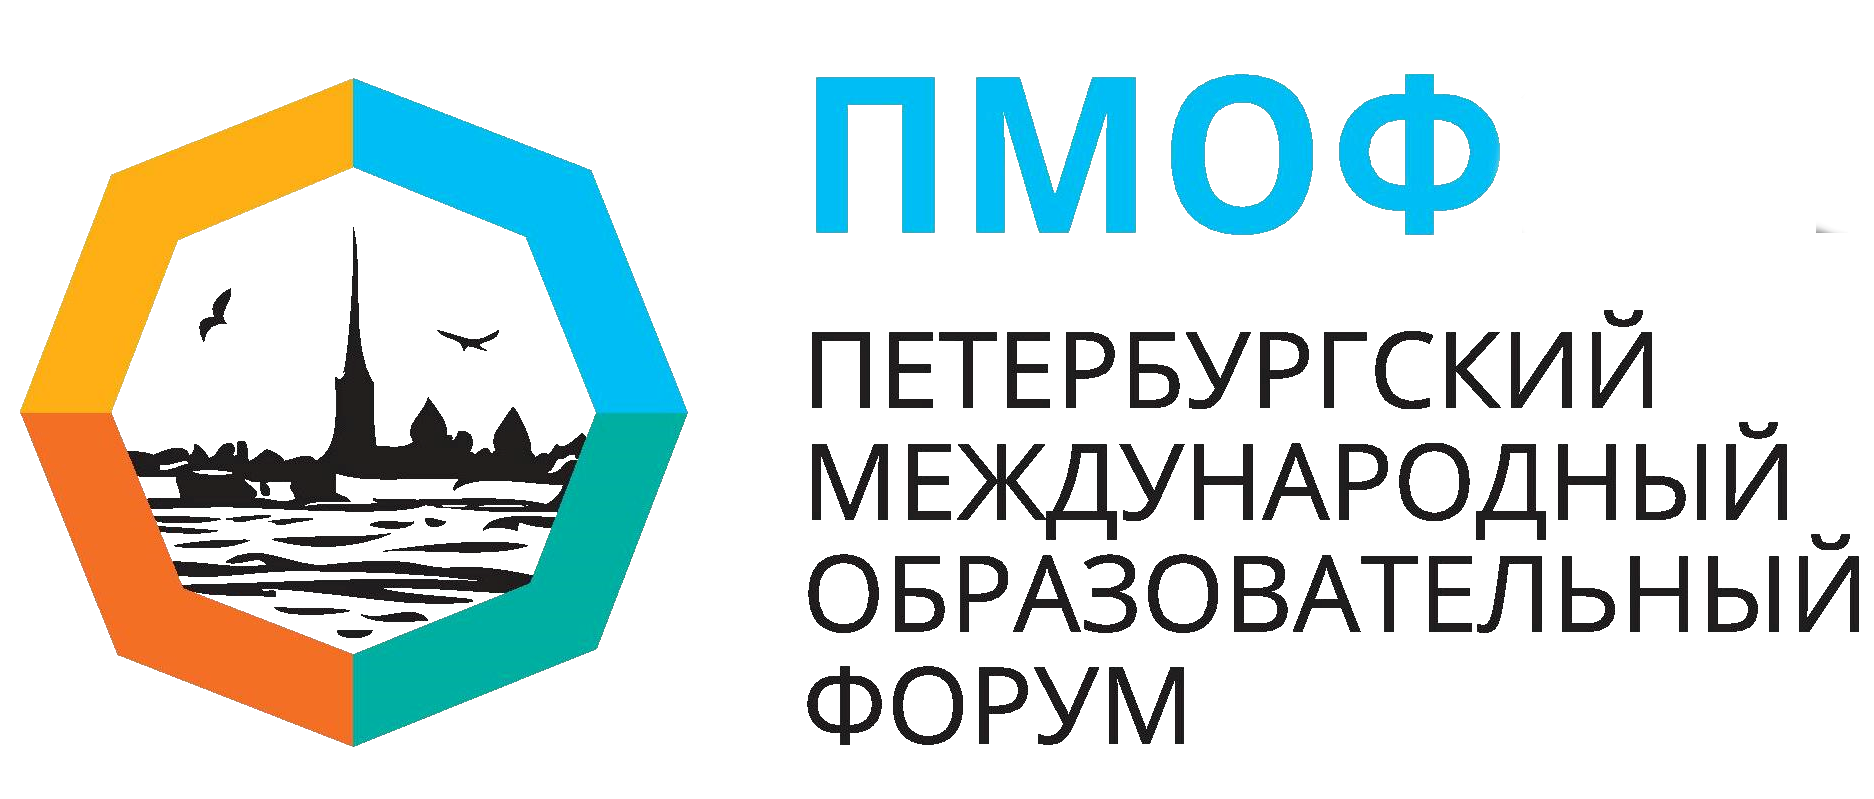 Петербургский международный образовательный форум-2021